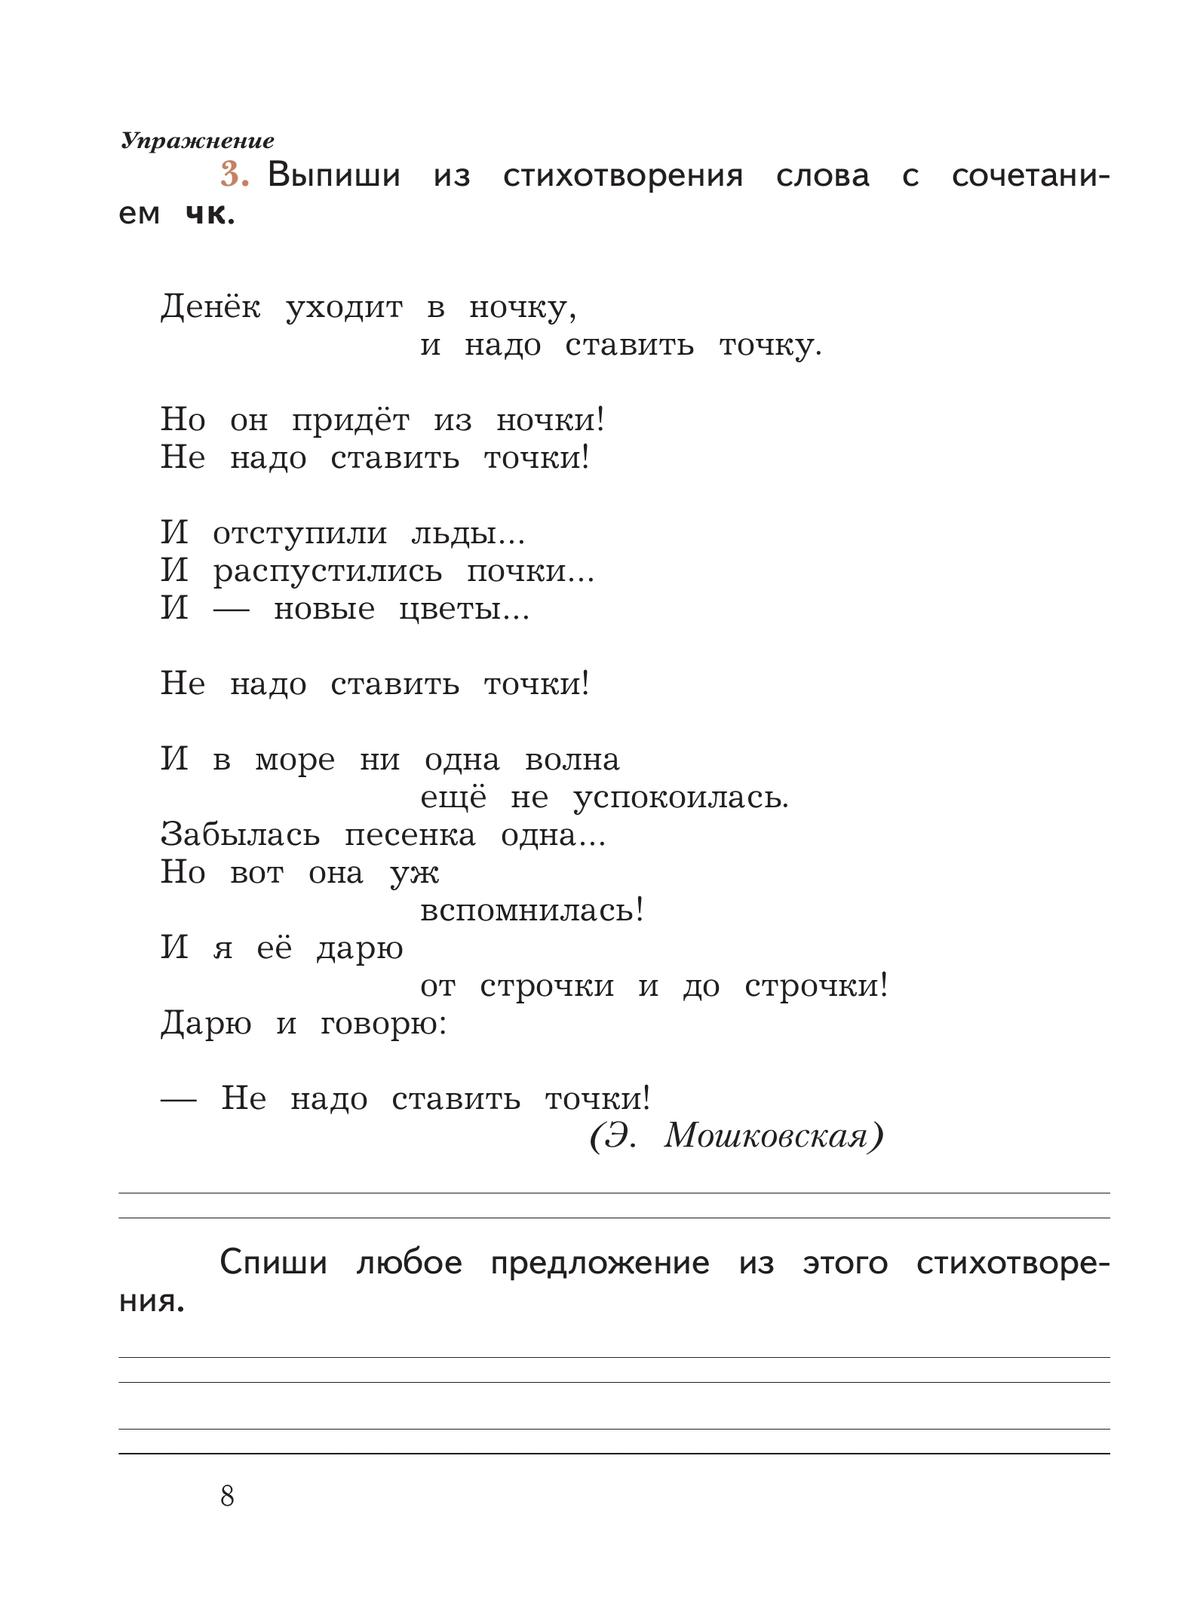 Русский язык. 2 класс. Пишем грамотно. Рабочая тетрадь. В 2 частях. Часть 1 2